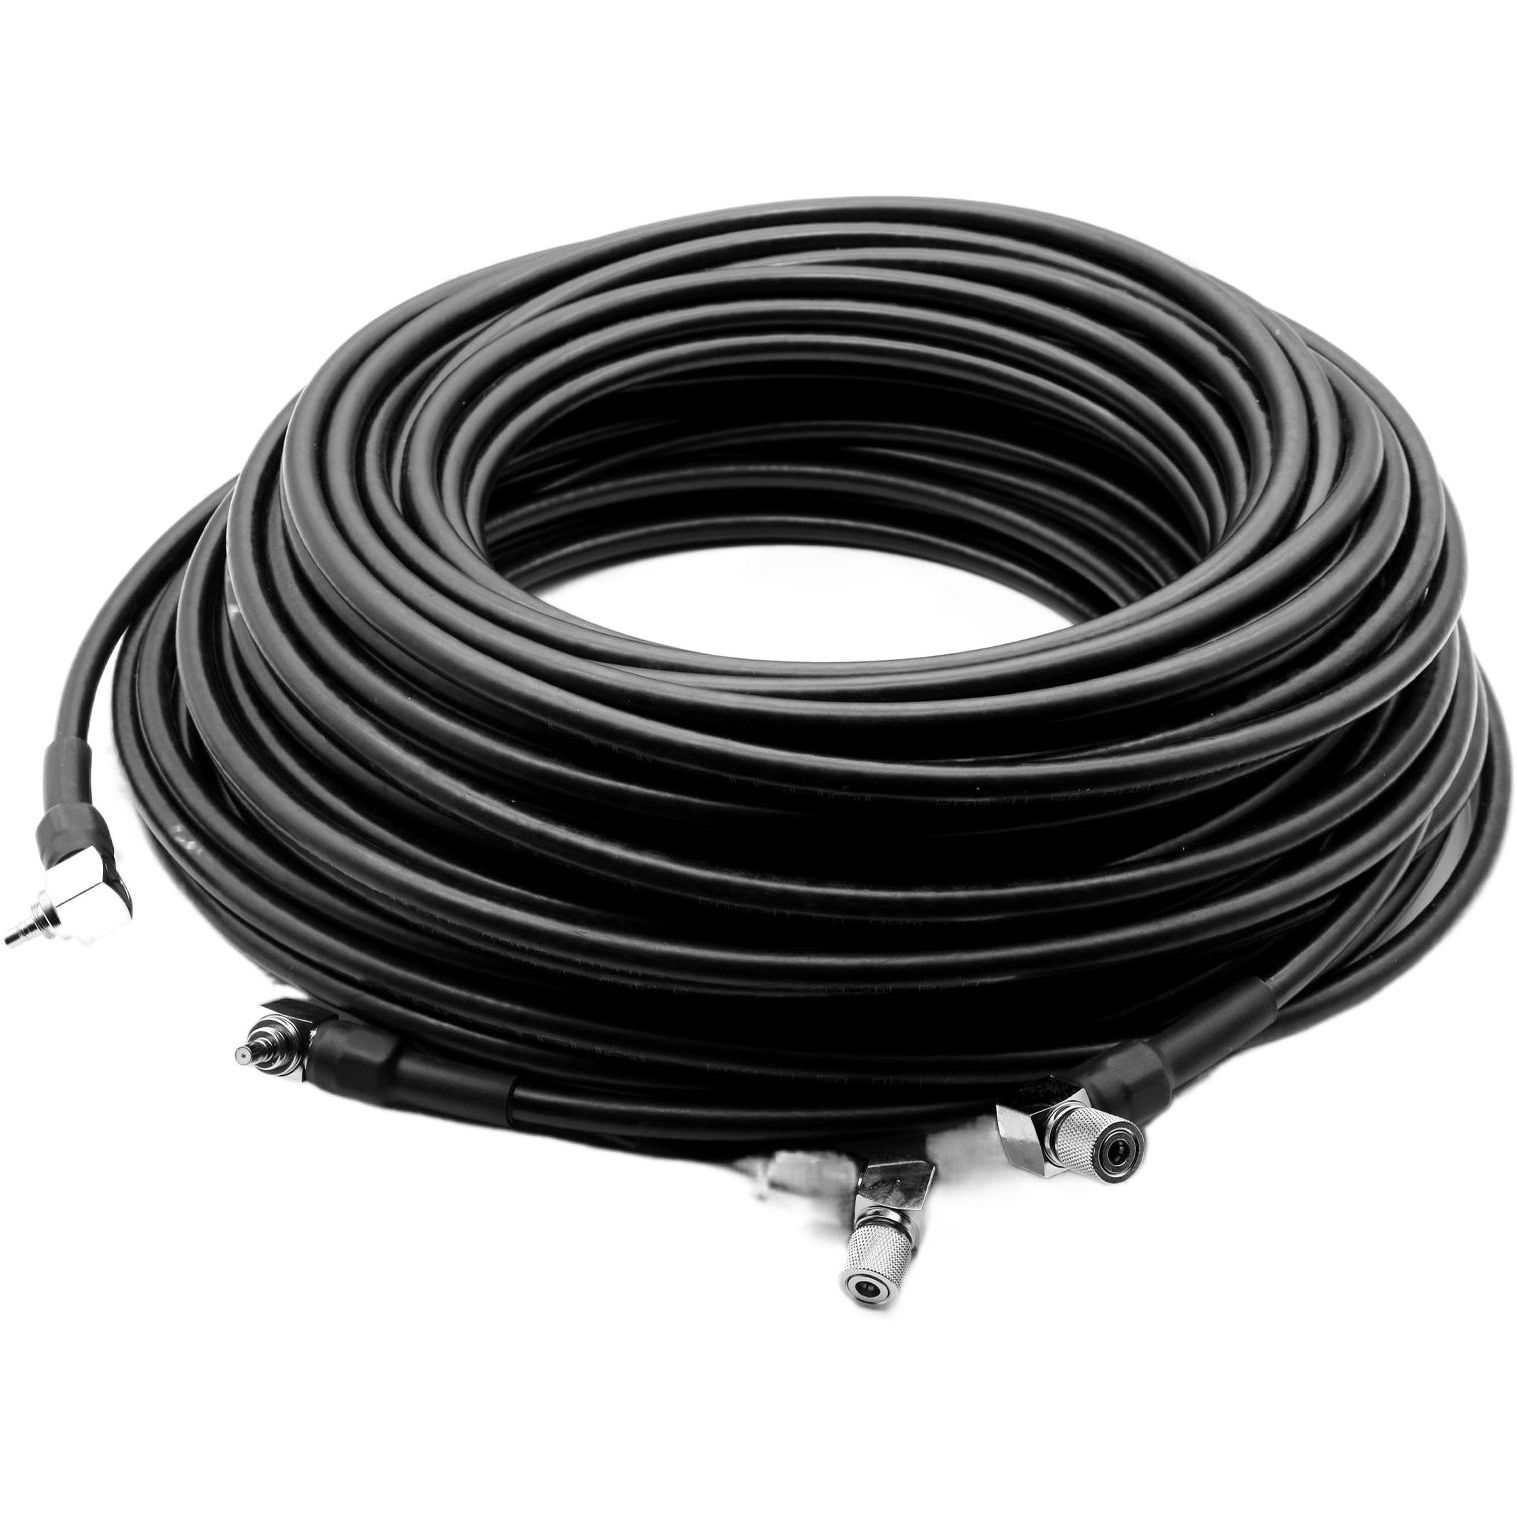 Антенный кабель Alientech RG8 для Duo II/III, 35 м (пара) фото 1